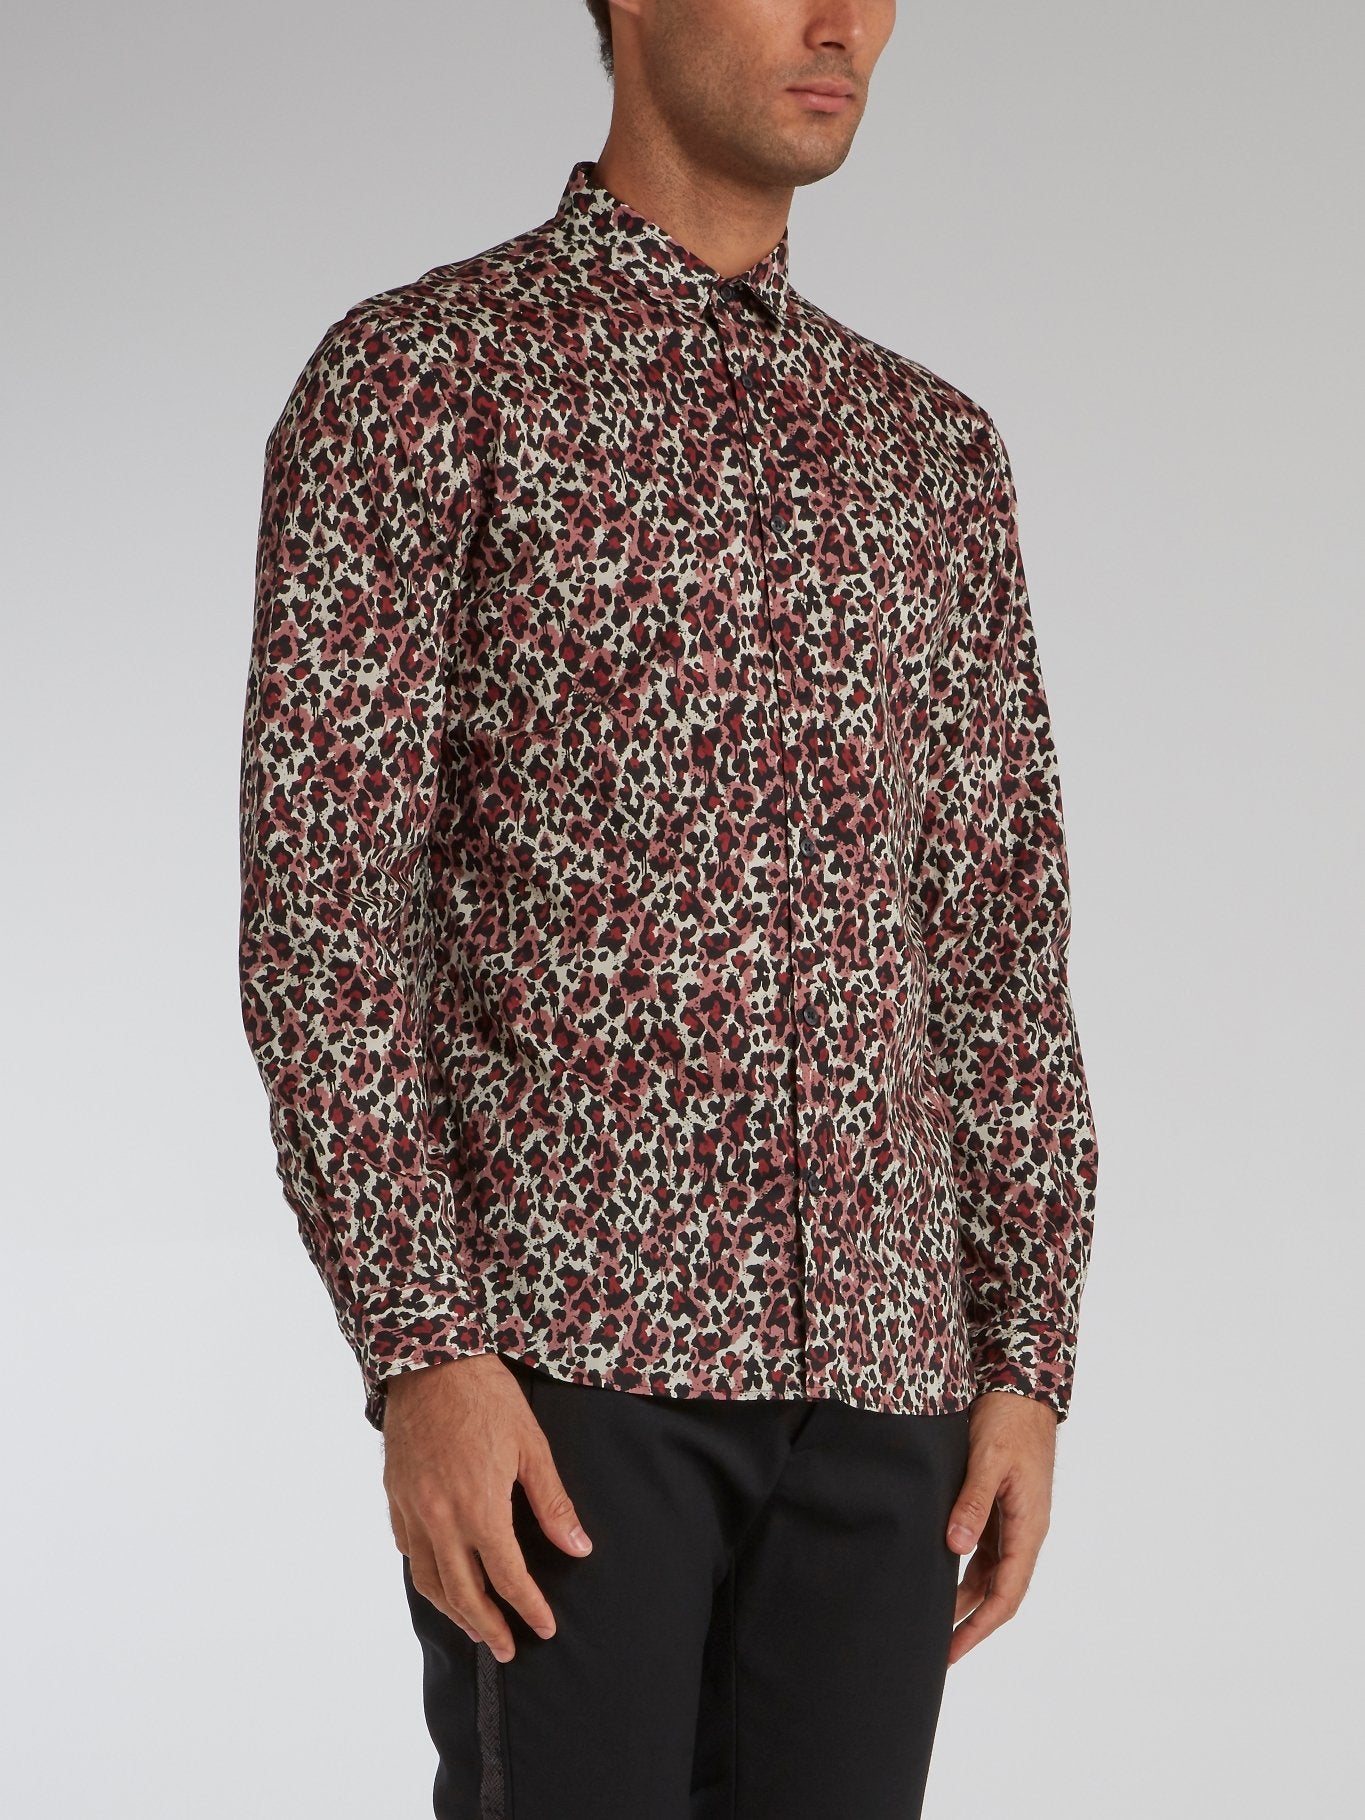 Leopard Print Button Up Shirt